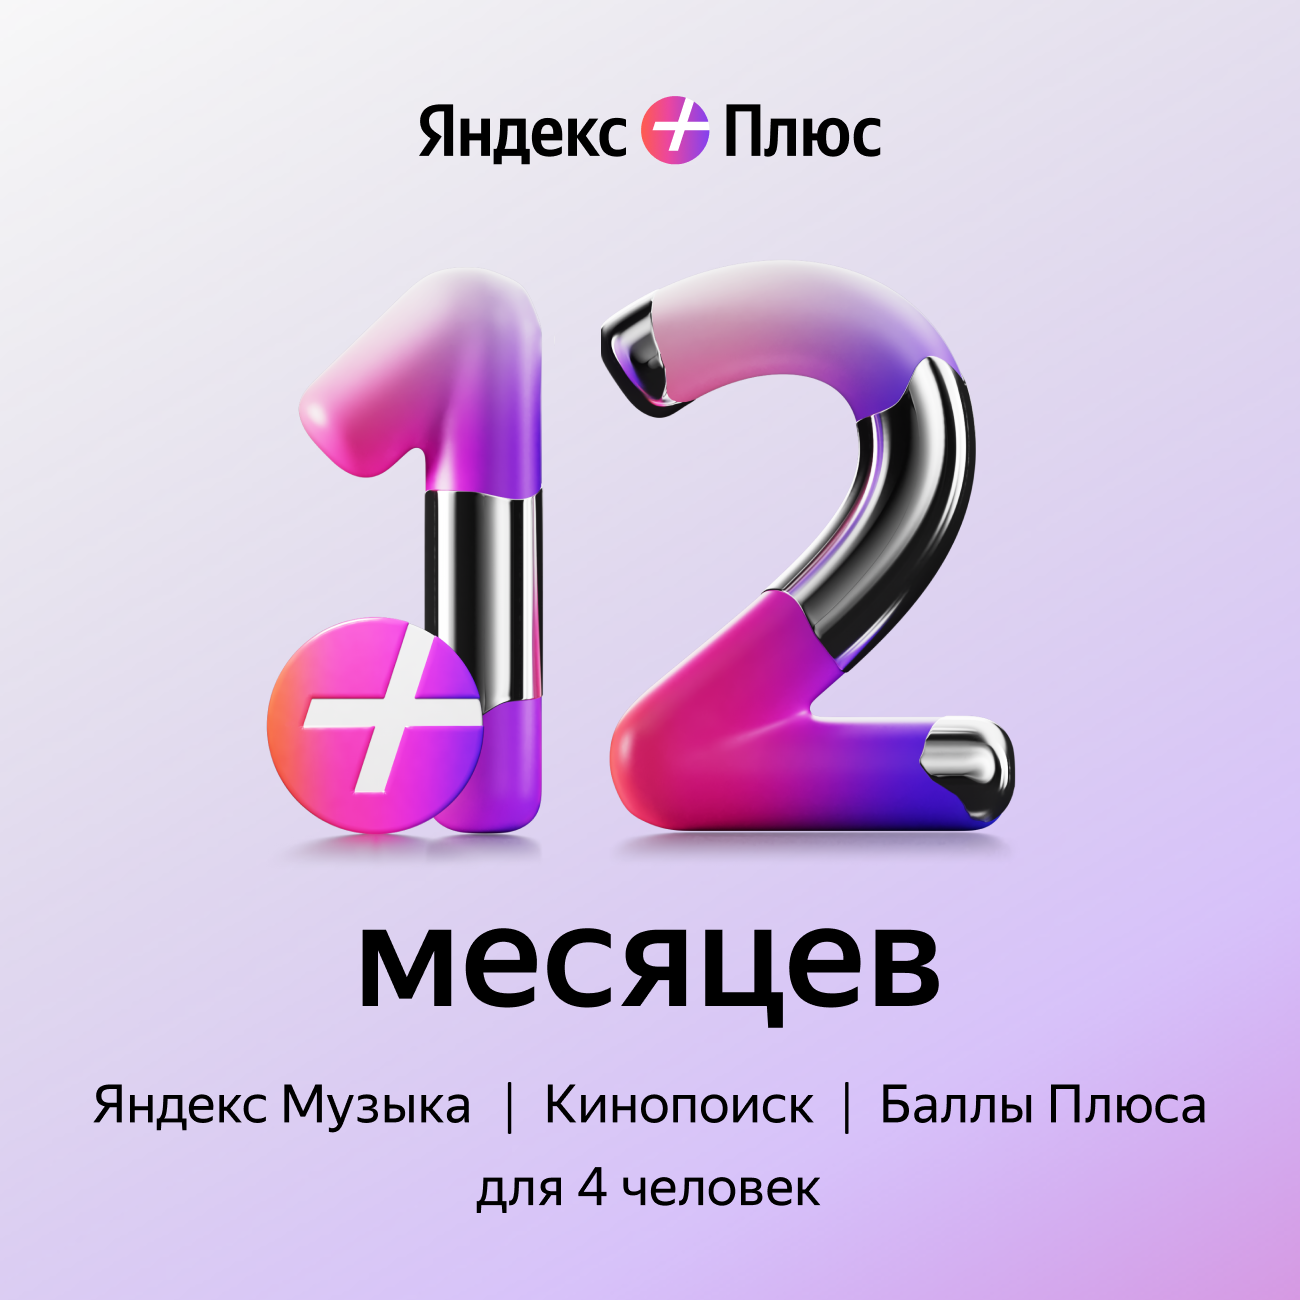 Яндекс Плюс: годовая подписка